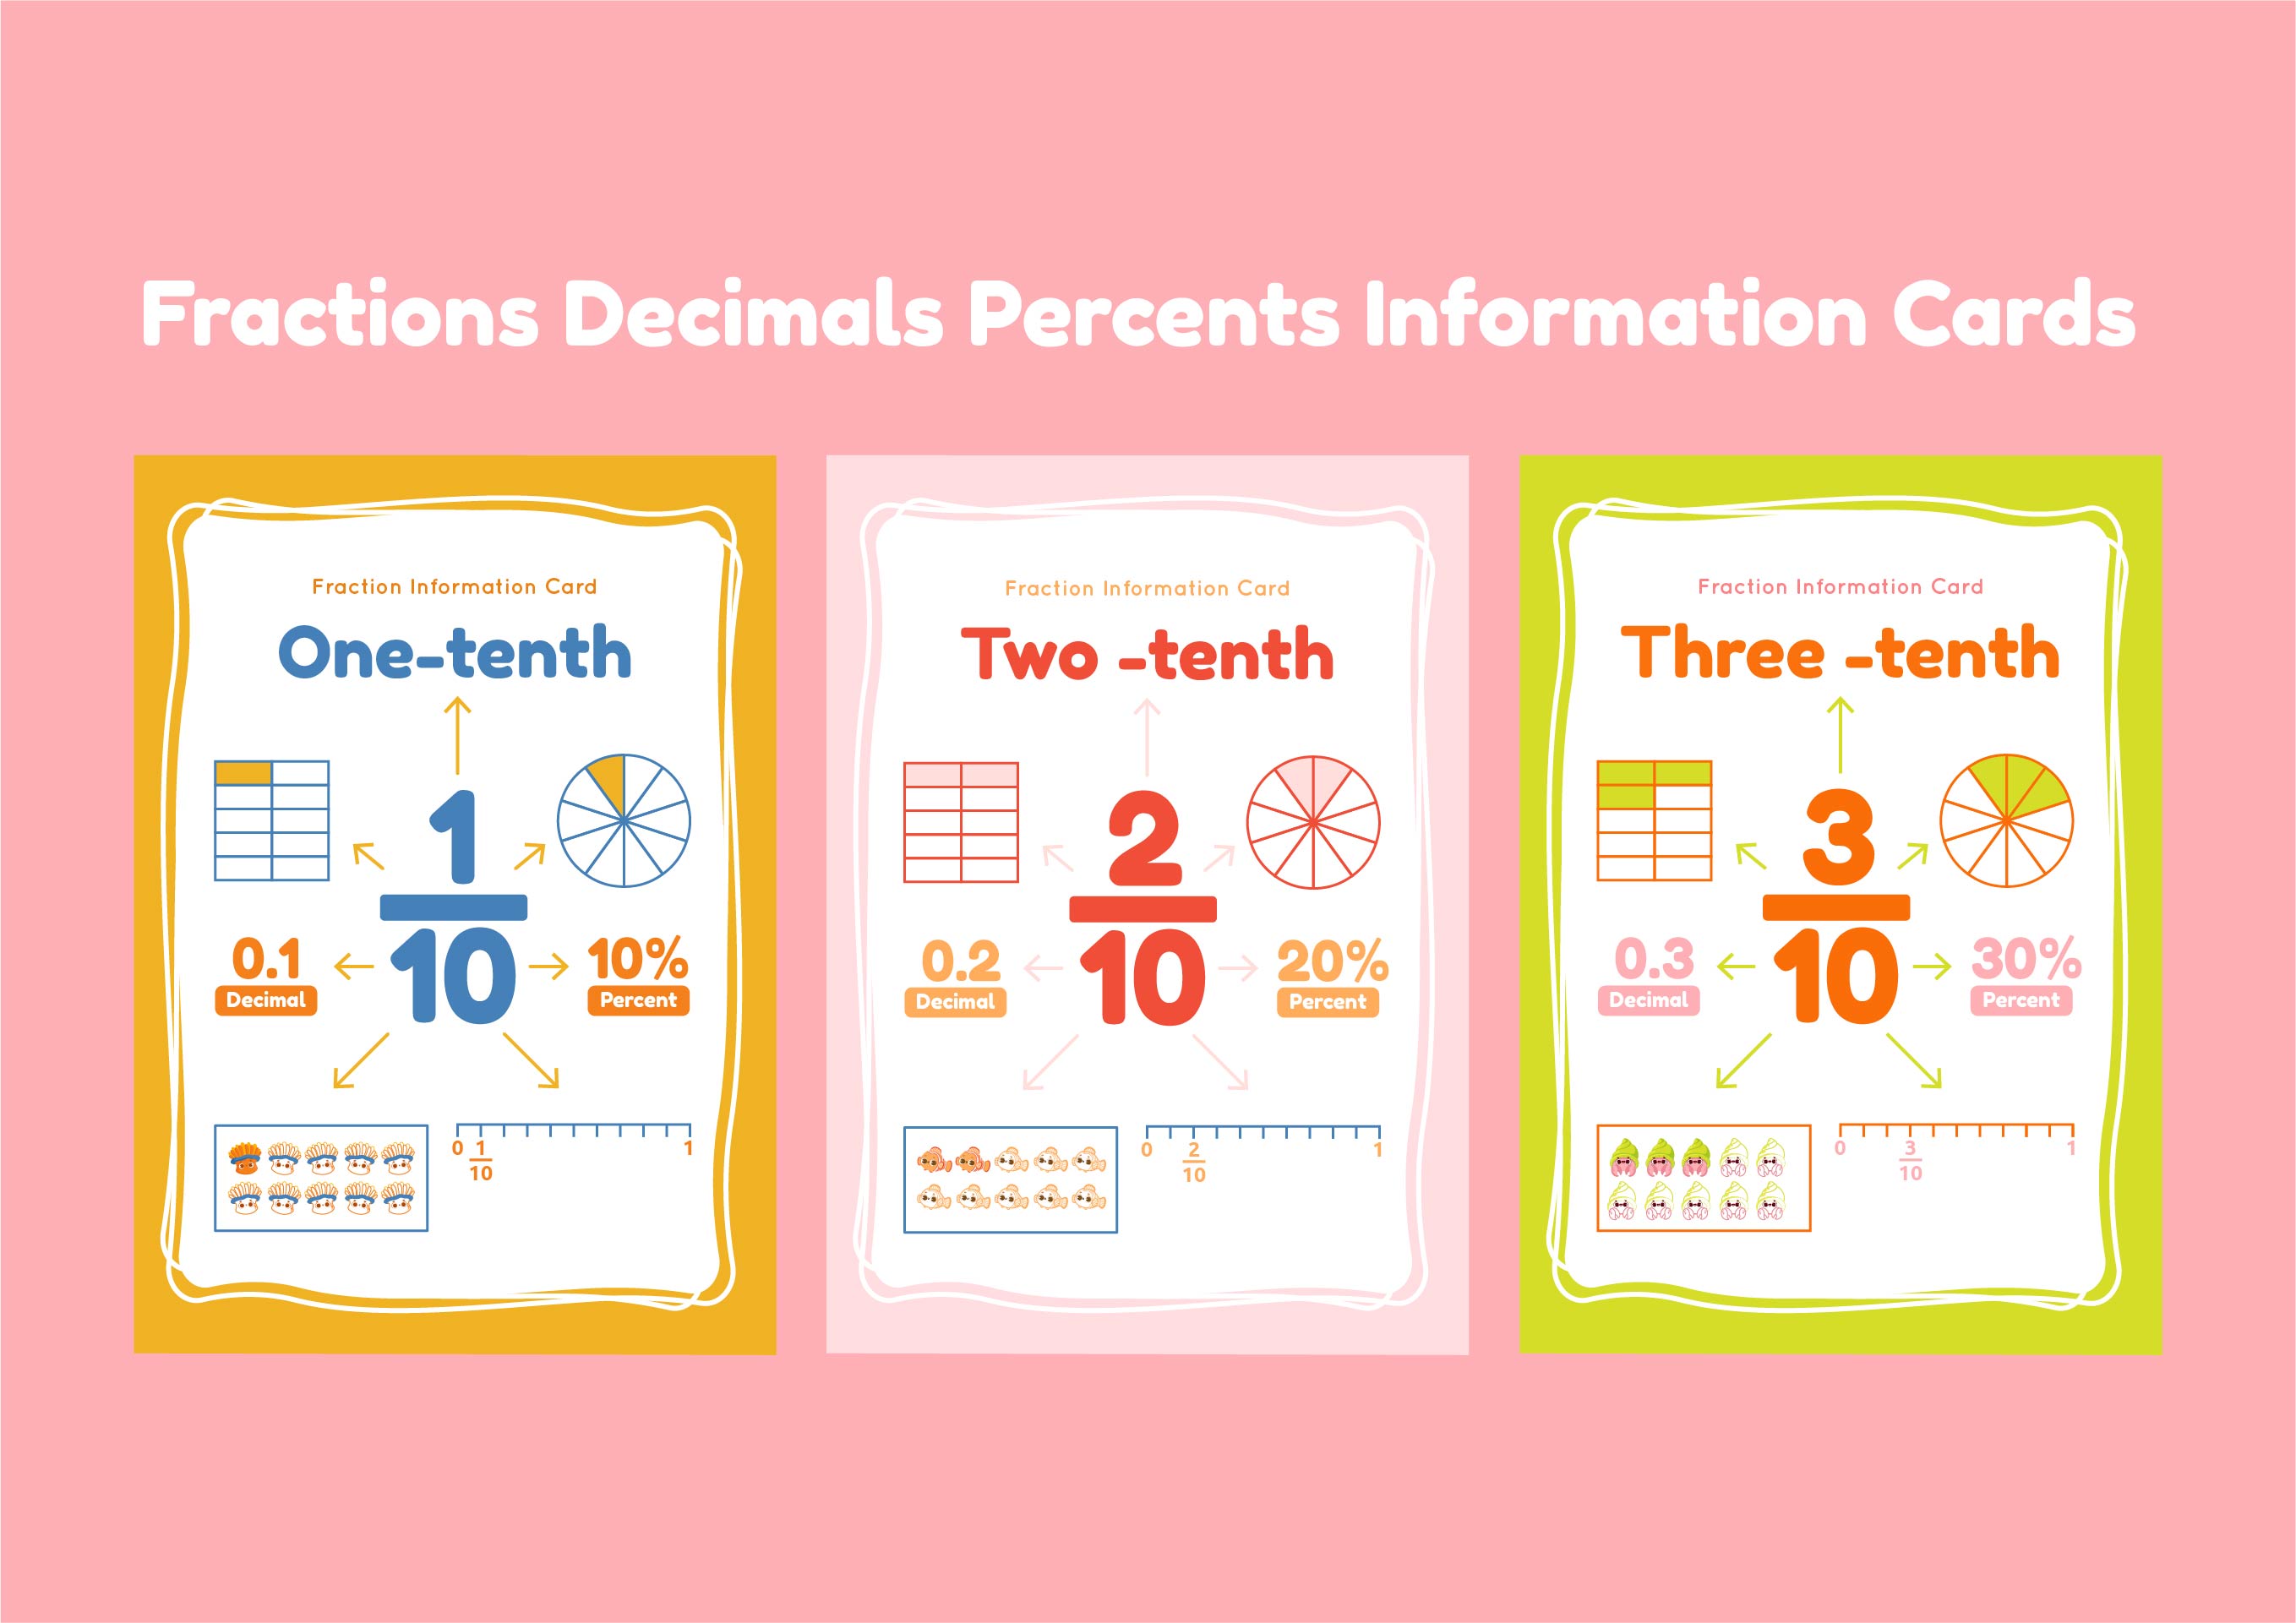 Fractions Decimals Percents Information Cards